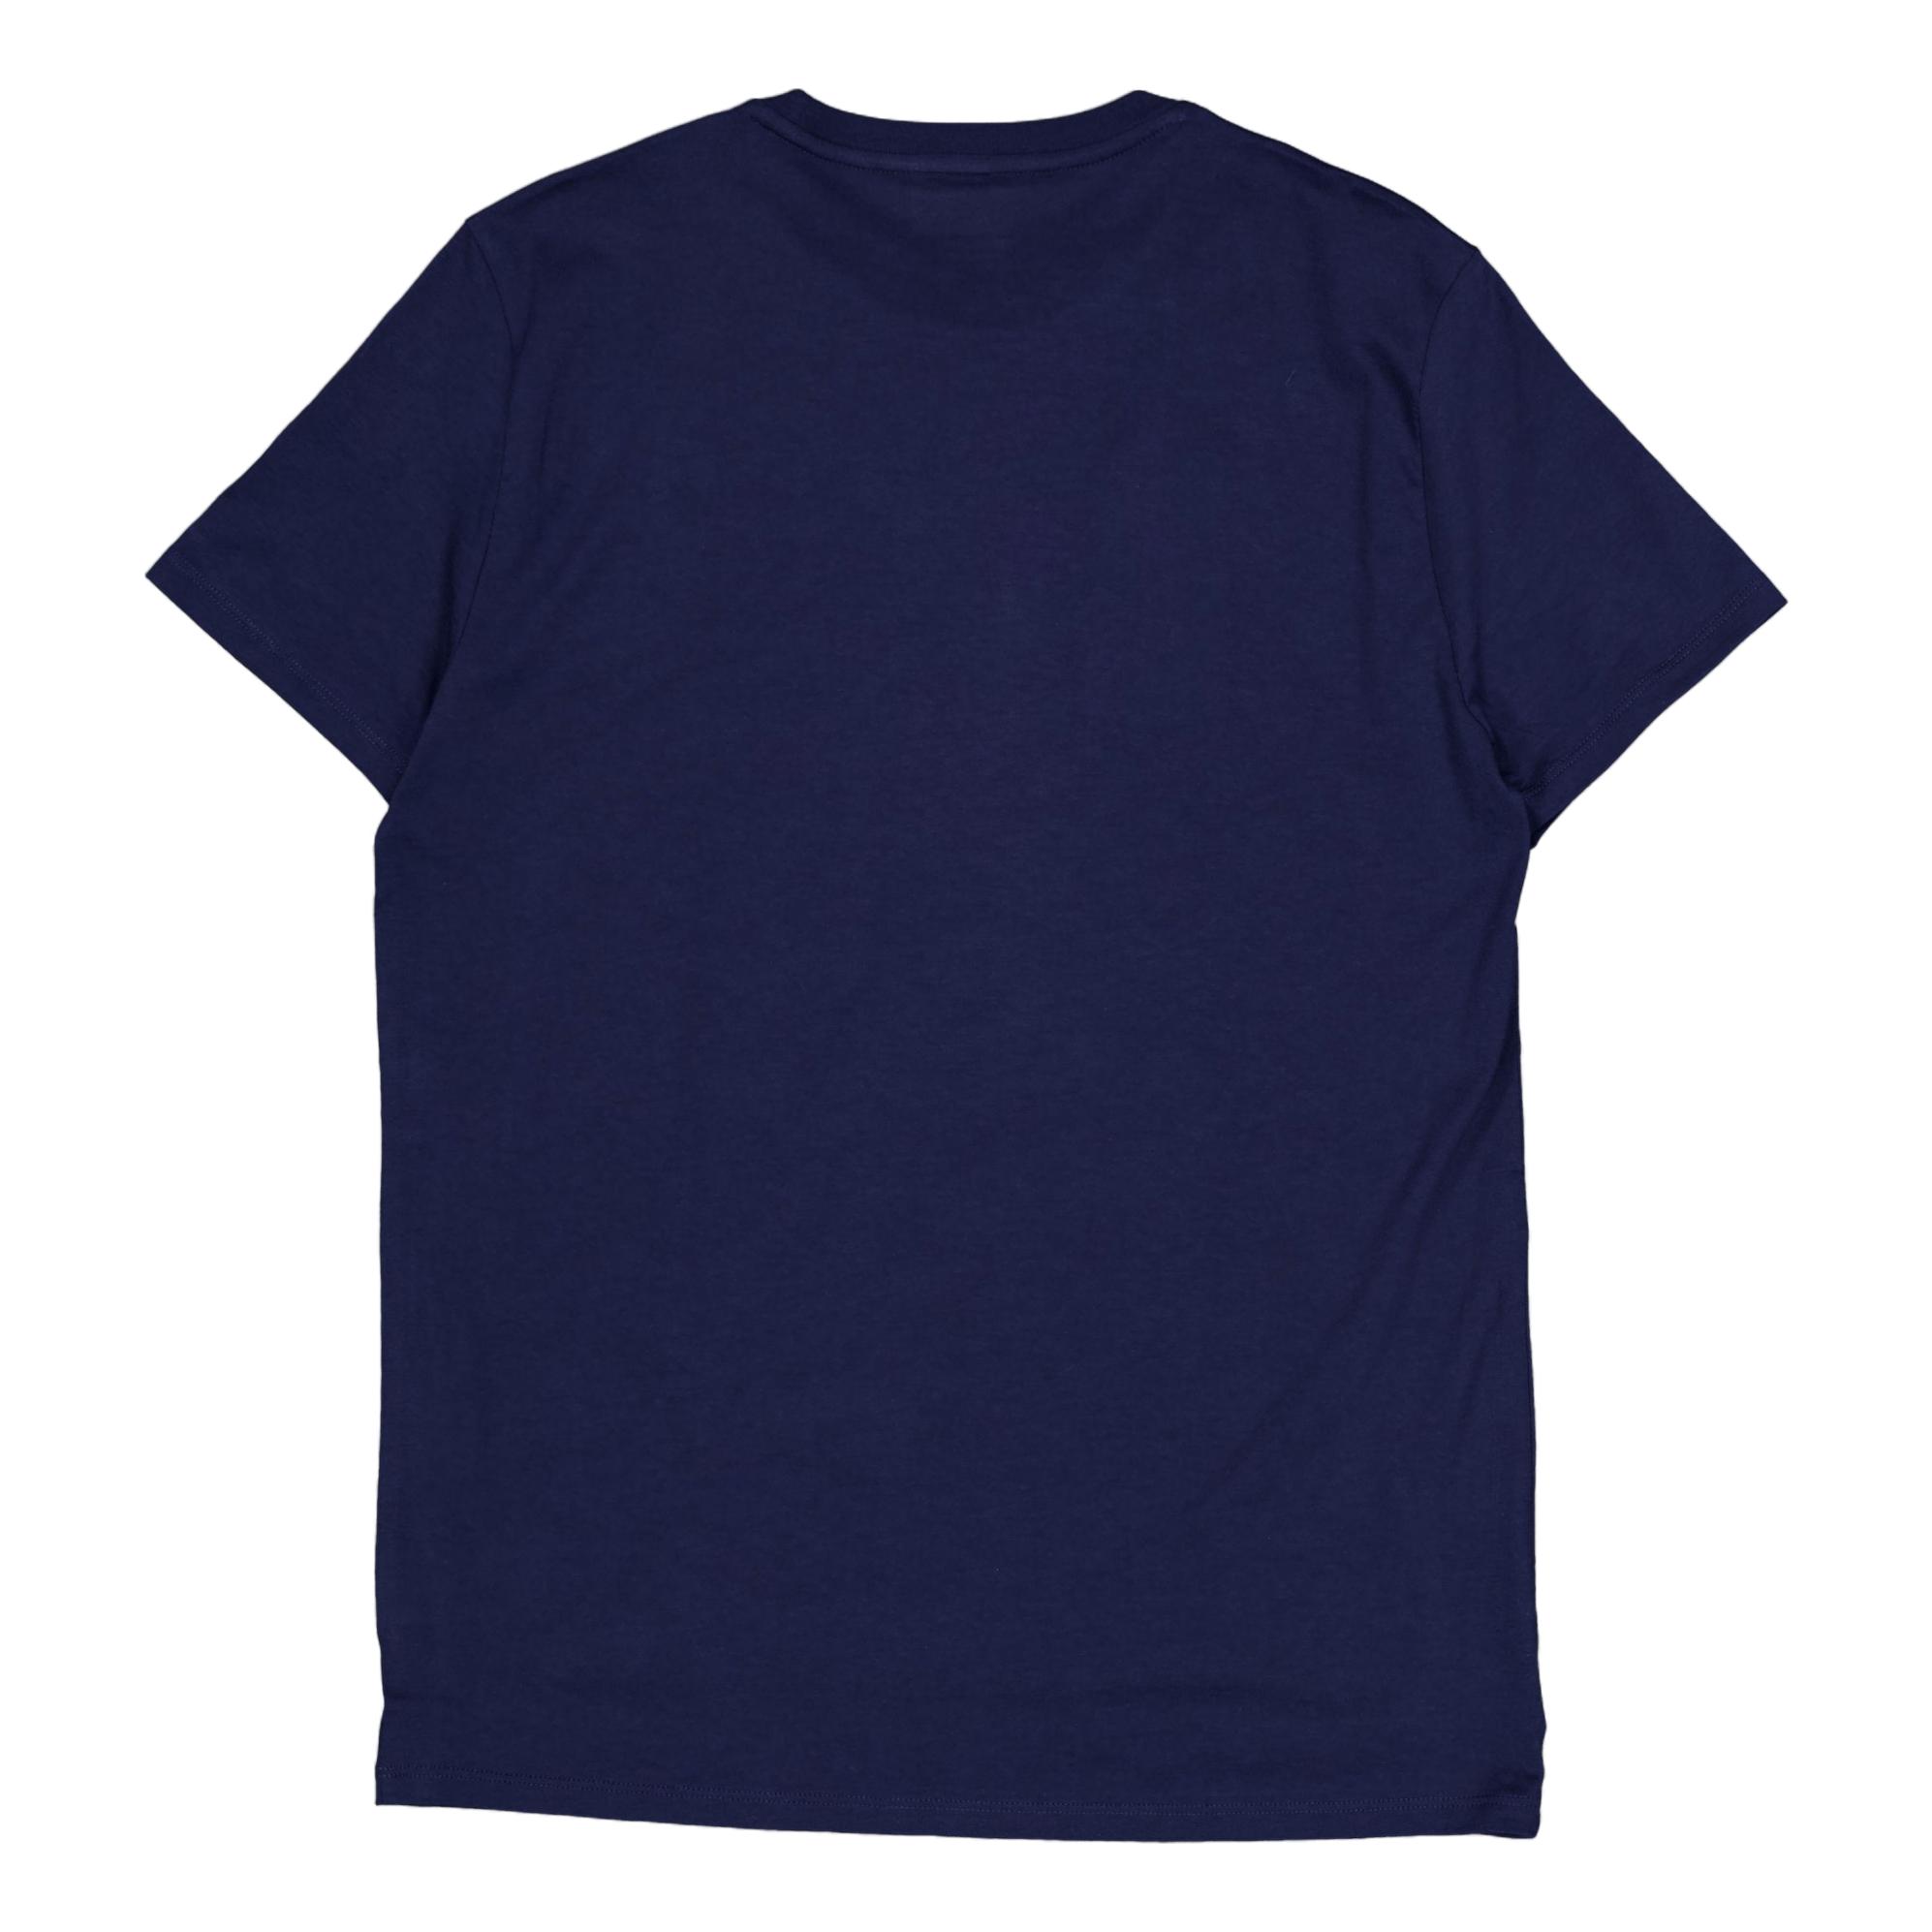 Tee-shirt Navy Blue